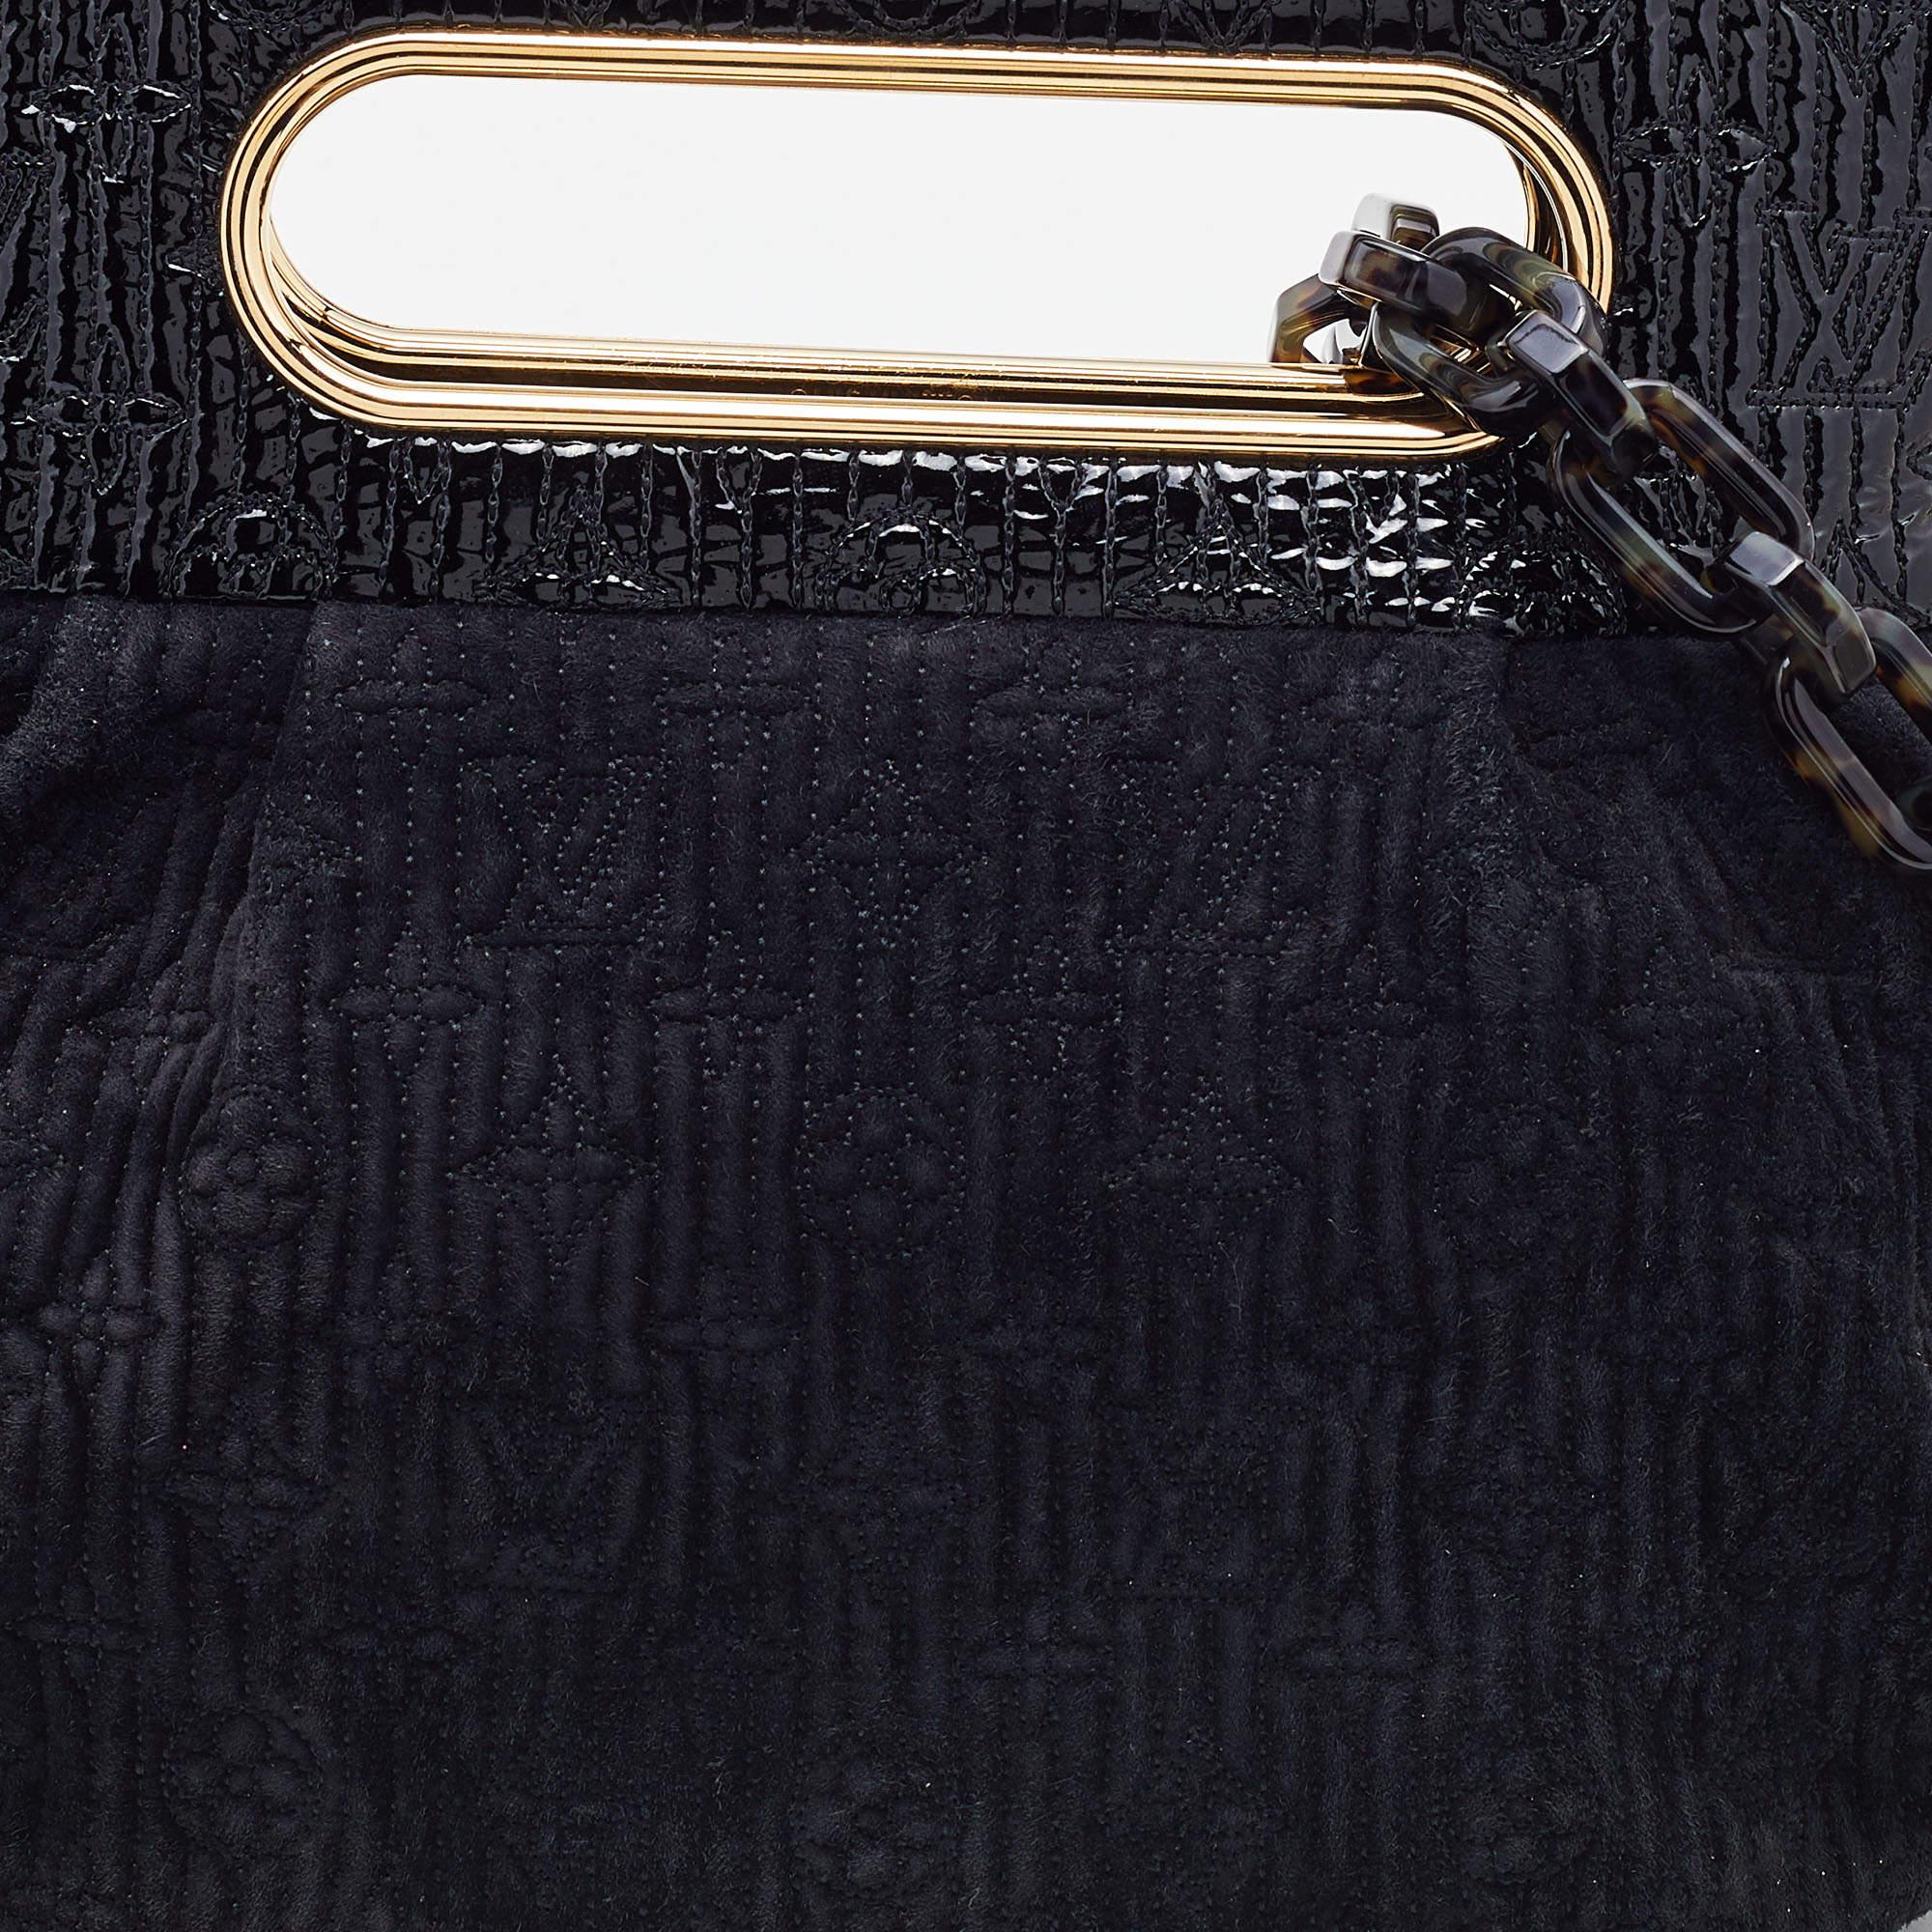 Louis Vuitton Black Monogram Suede Patent Limited Edition Motard Afterdark Bag 9